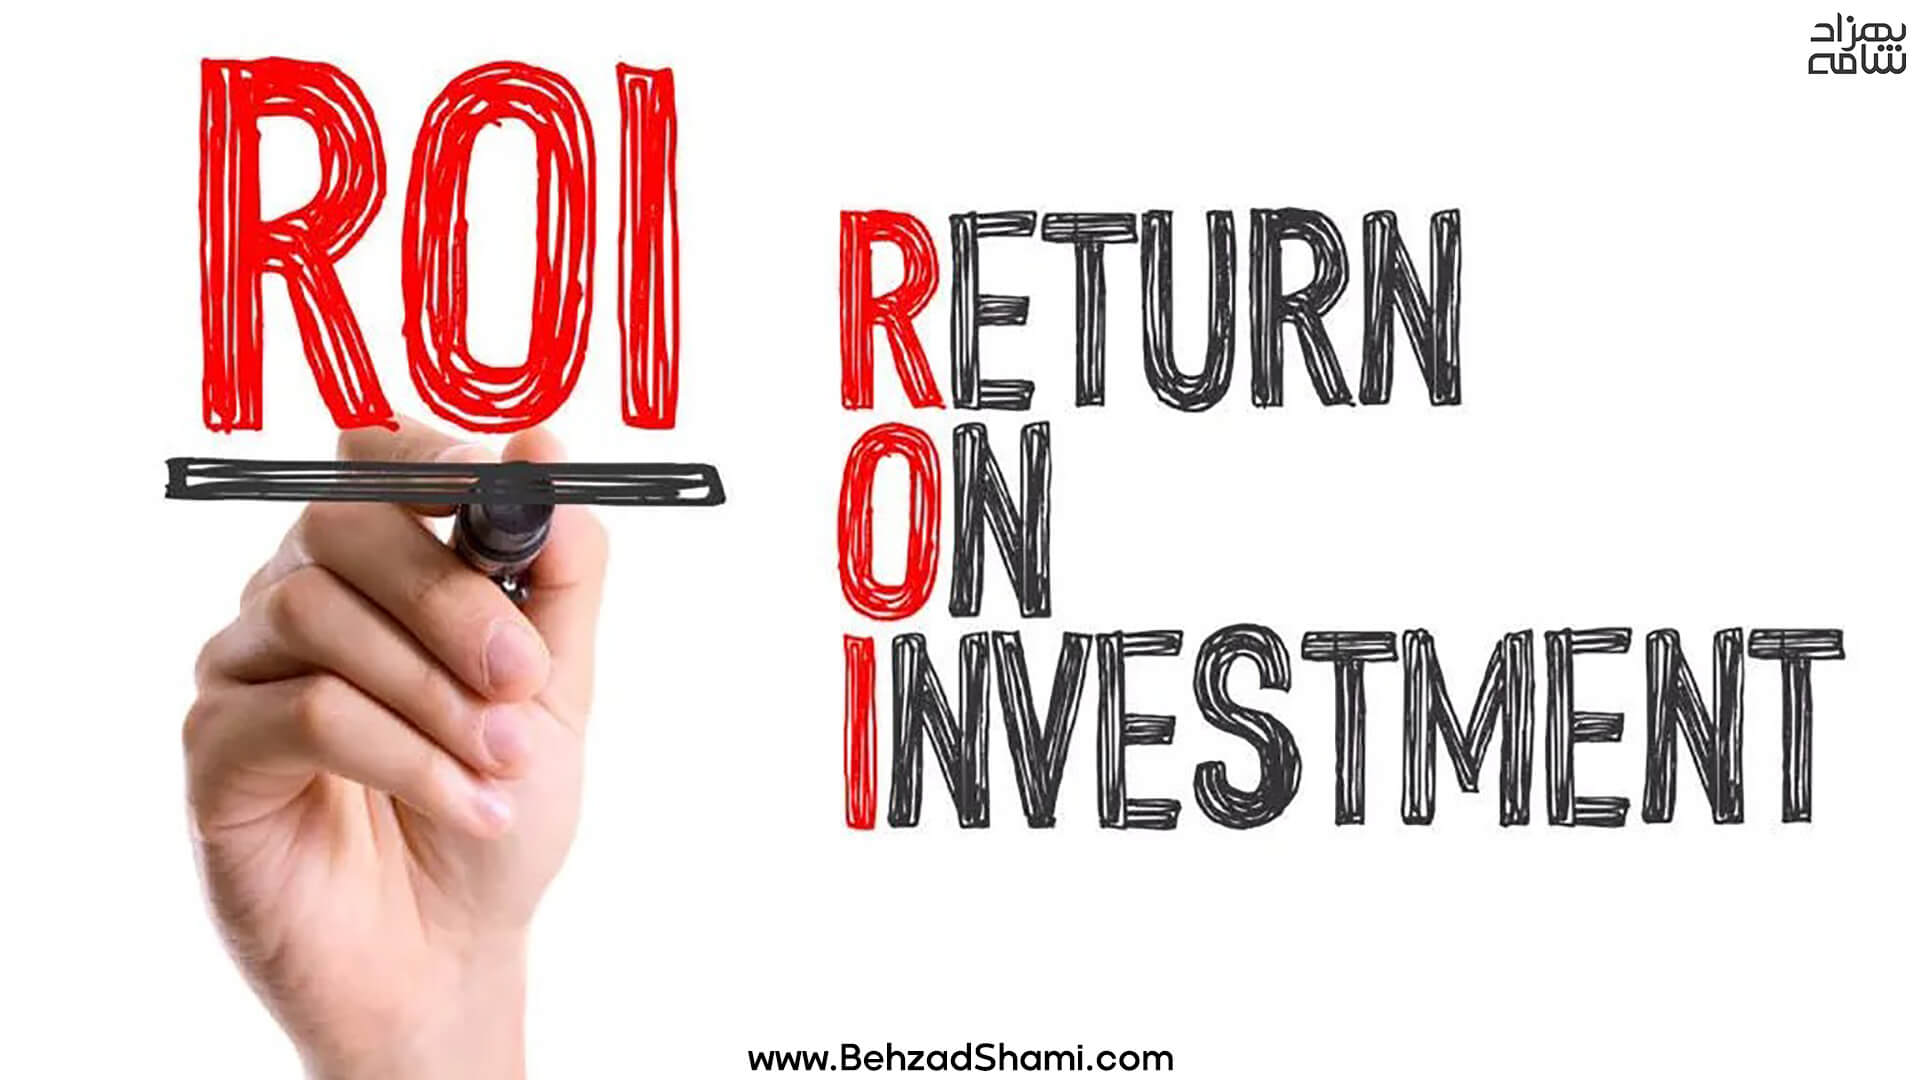 نرخ بازگشت سرمایه یا ROI چیست؟